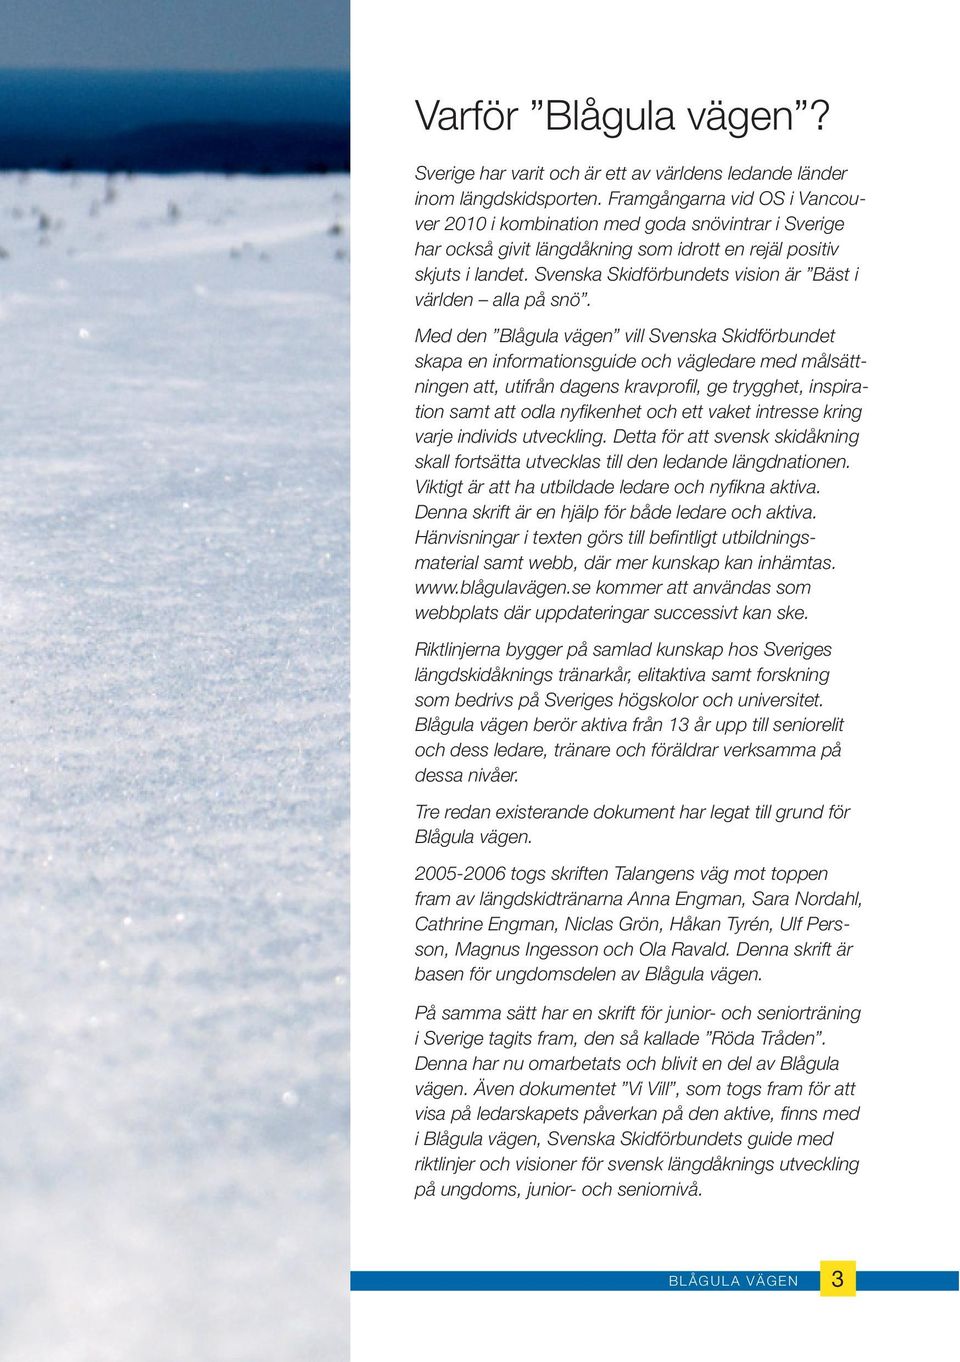 Svenska Skidförbundets vision är Bäst i världen alla på snö.